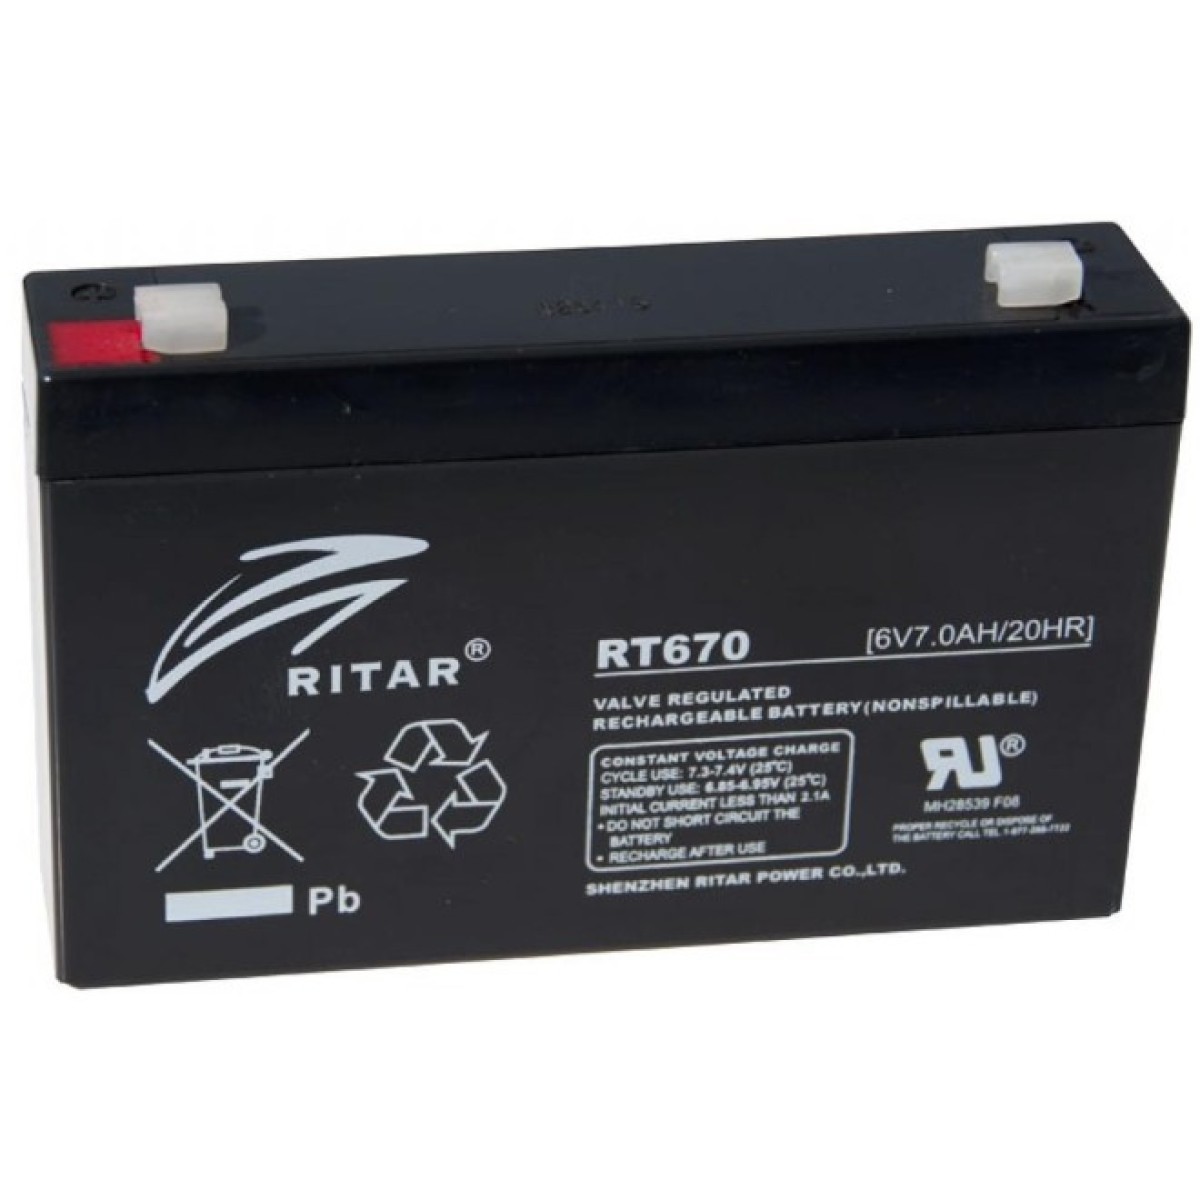 Батарея к ИБП Ritar RT670, 6V-7.0Ah (RT670) 256_256.jpg